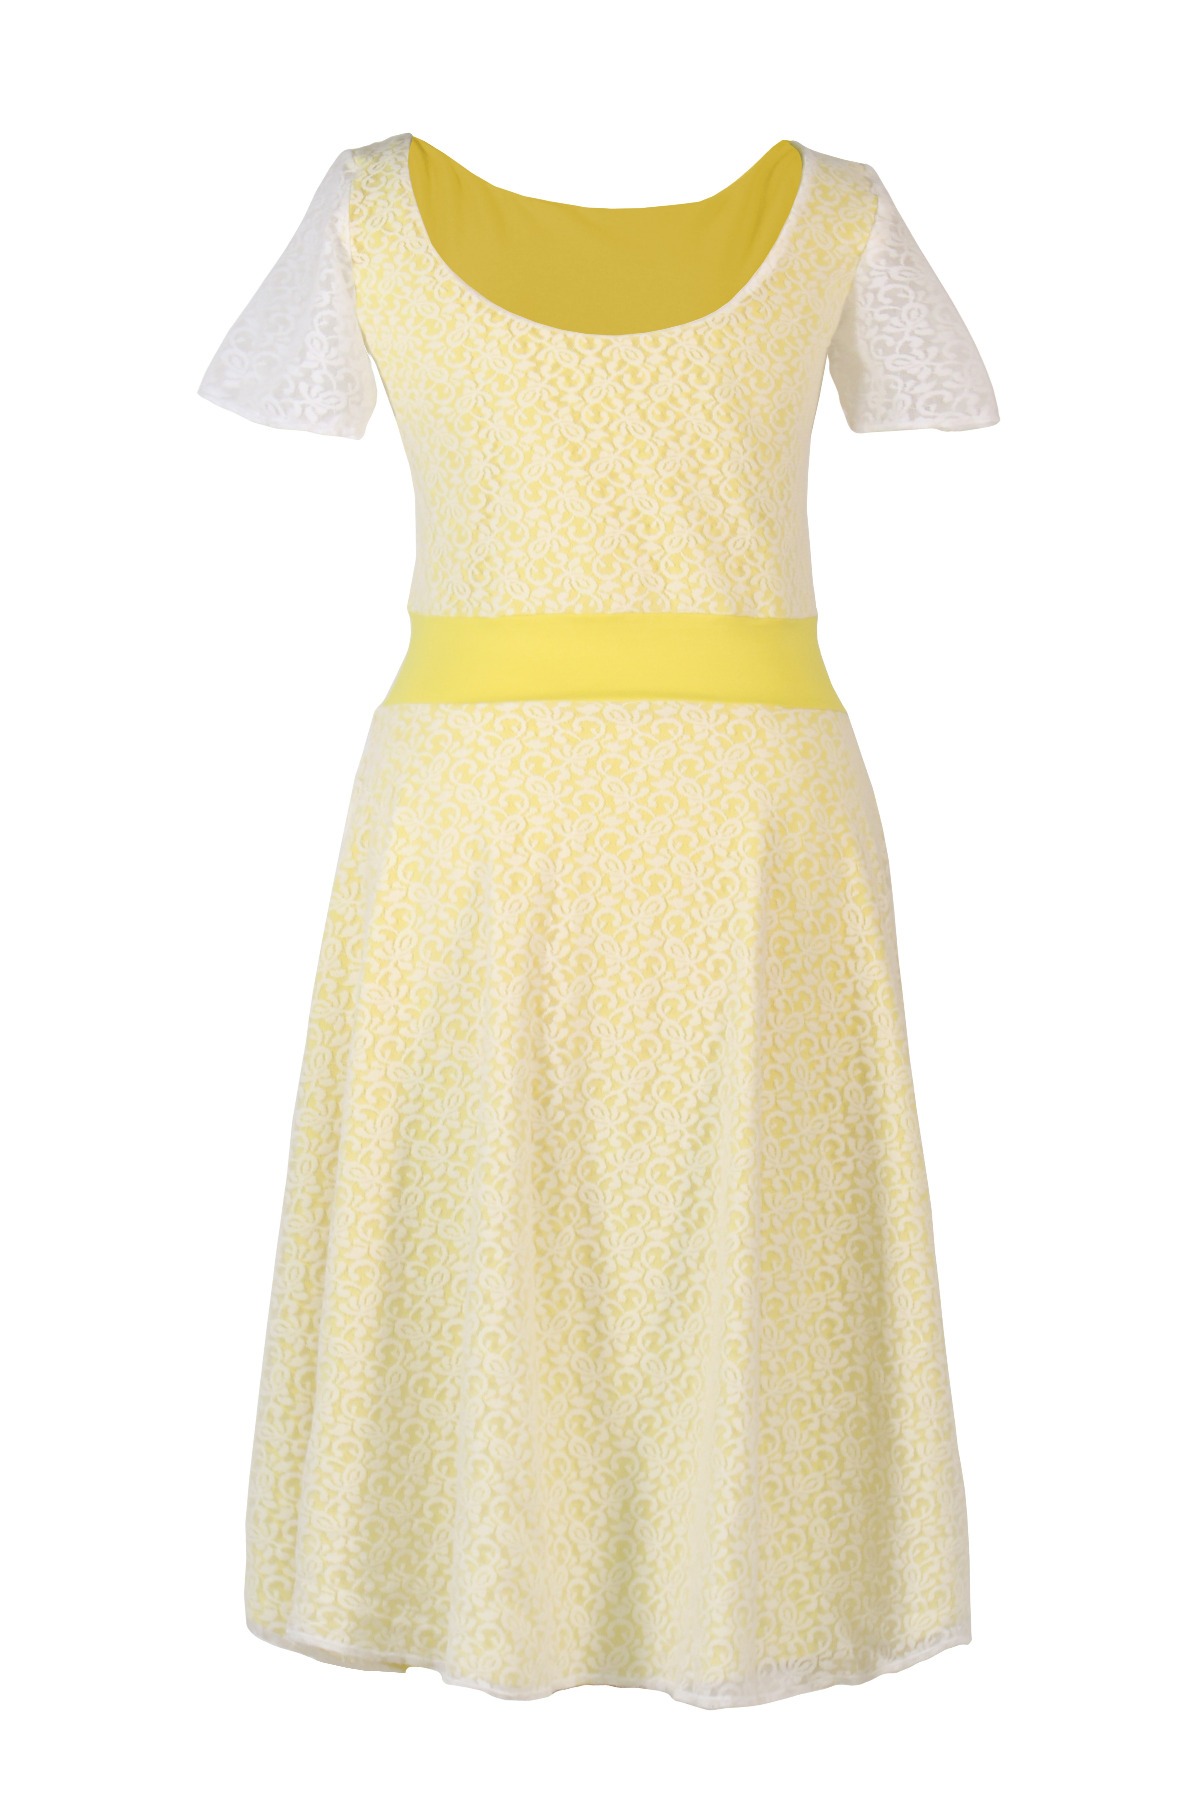 Bio-Kleid Perle zitrone gelb + weiß 2